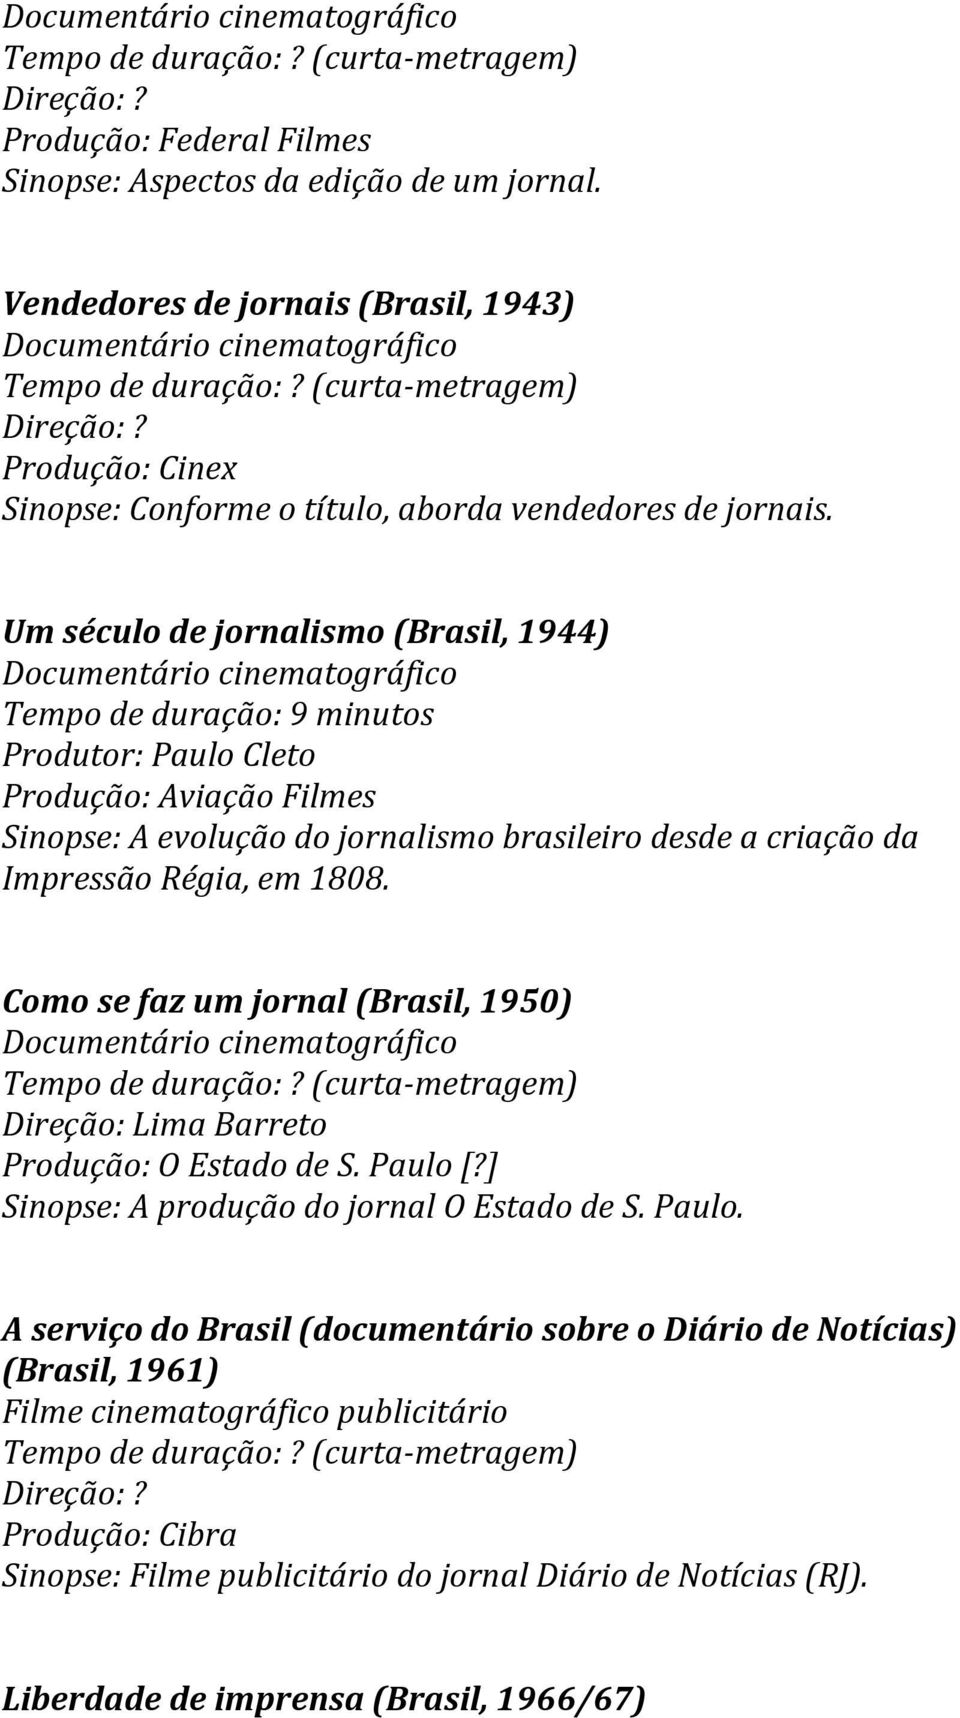 Régia, em 1808. Como se faz um jornal (Brasil, 1950) Direção: Lima Barreto Produção: O Estado de S. Paulo 